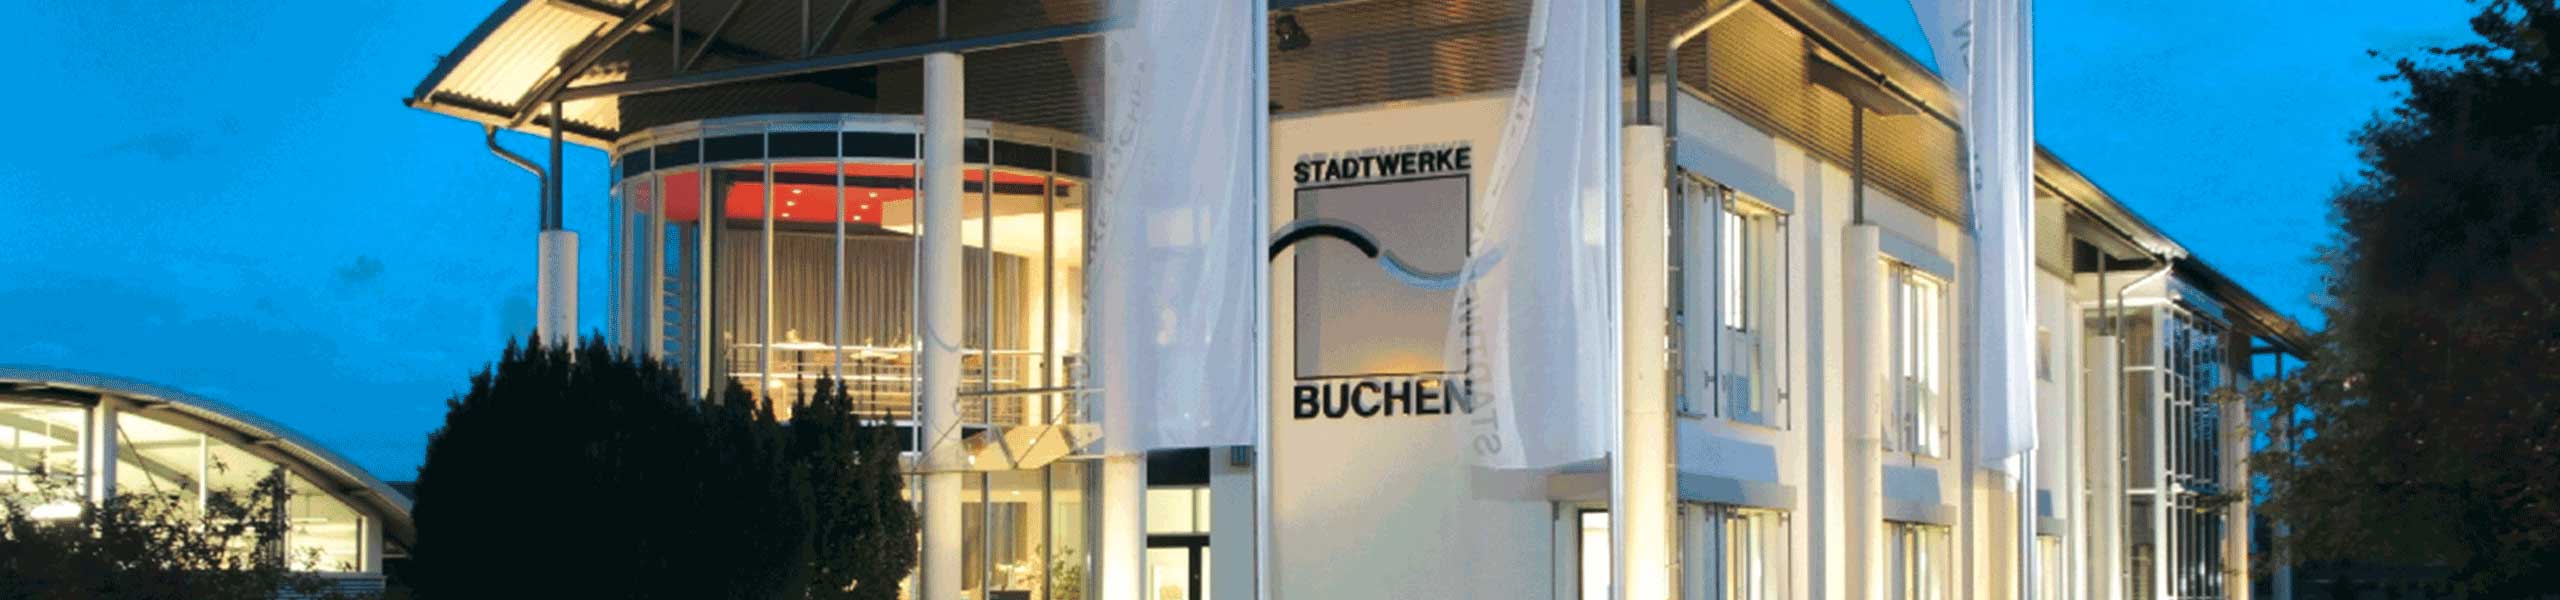 Stadtwerke Buchen GmbH & Co KG - Impressum